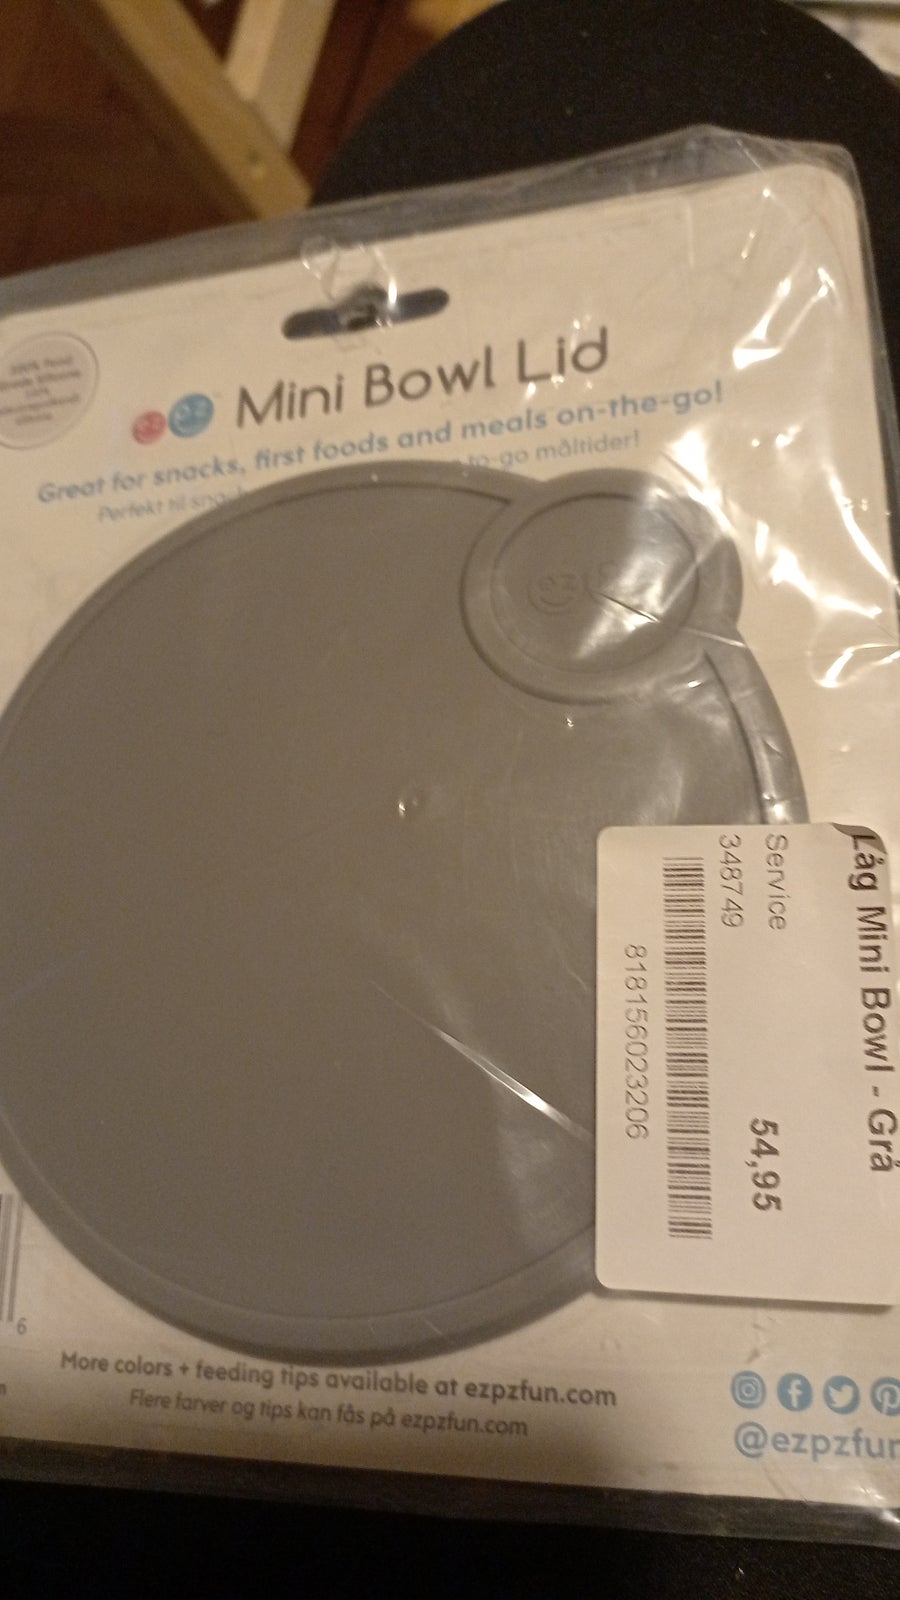 Andet, Mini Bowl Ltd, Ezpzfun